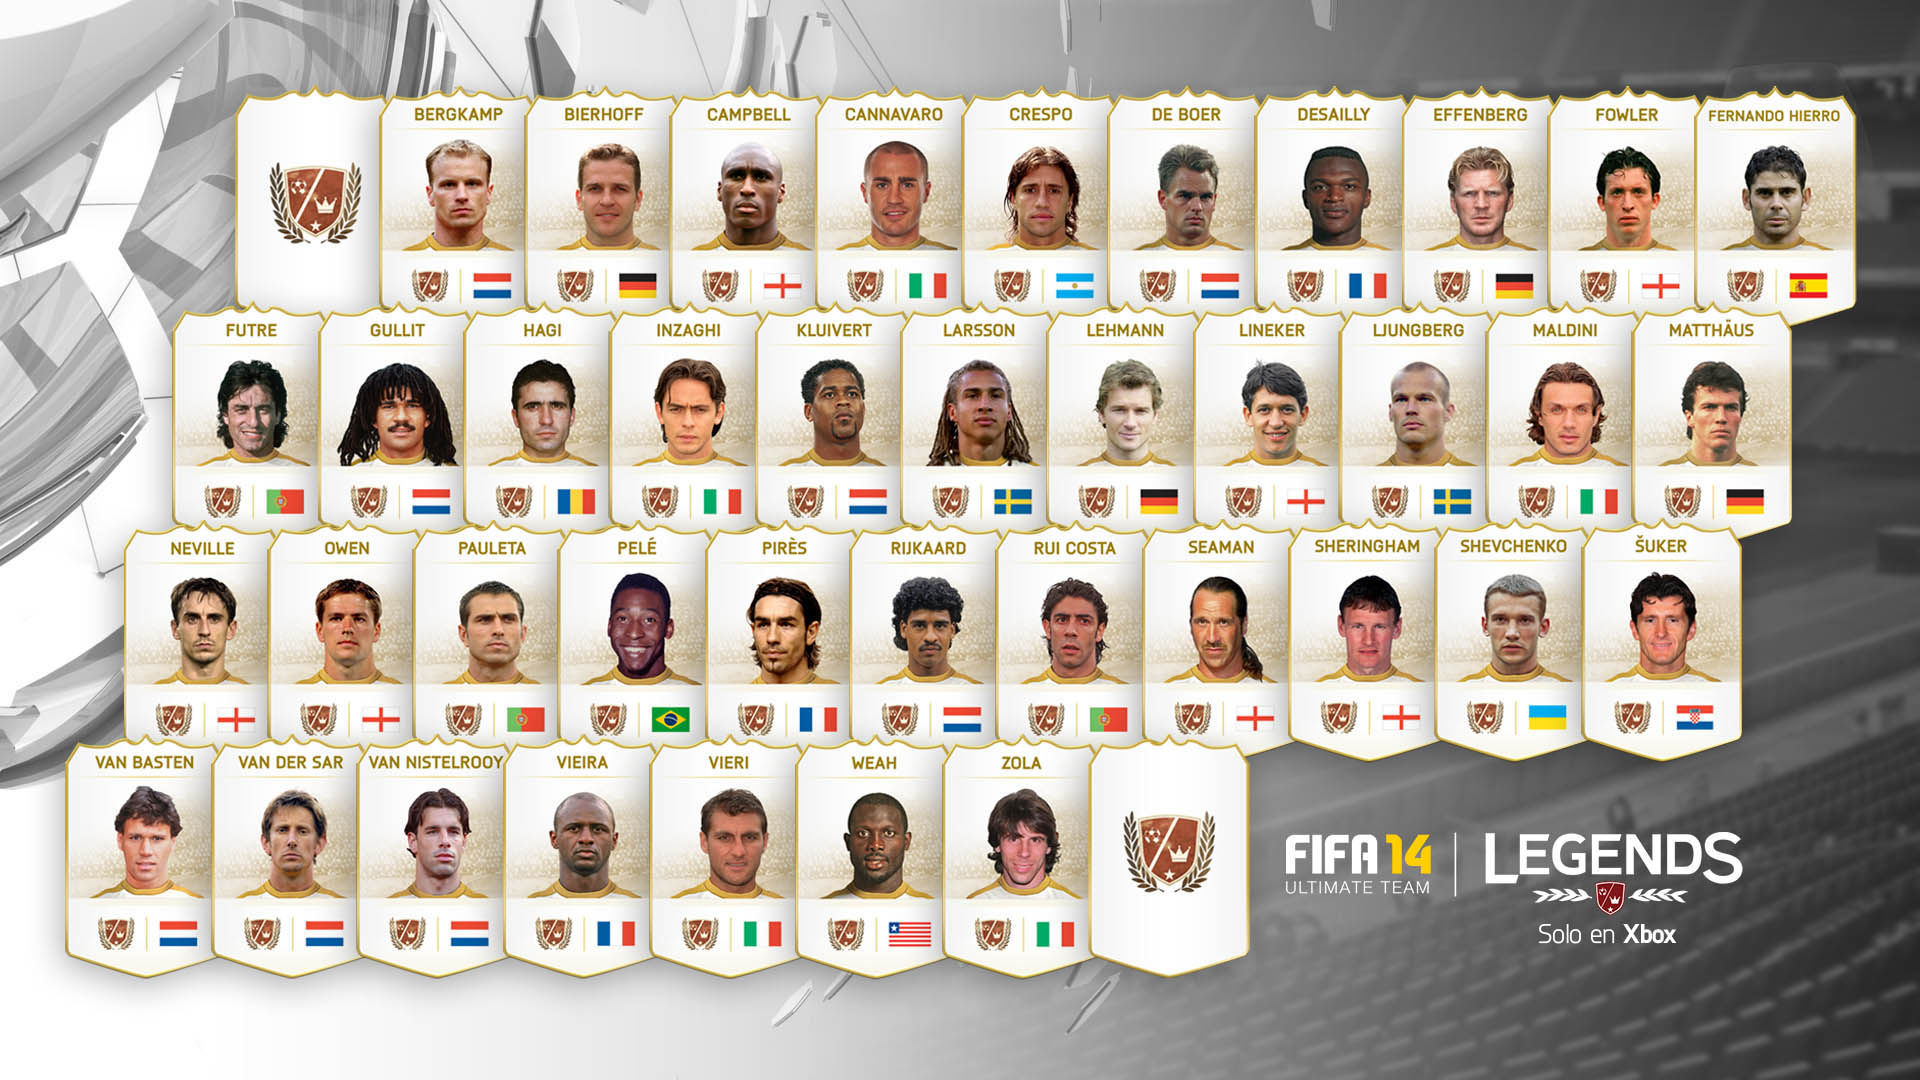 EA Sports desvela un nuevo modo online, licencias, demo y jugadores legendarios de FIFA 14